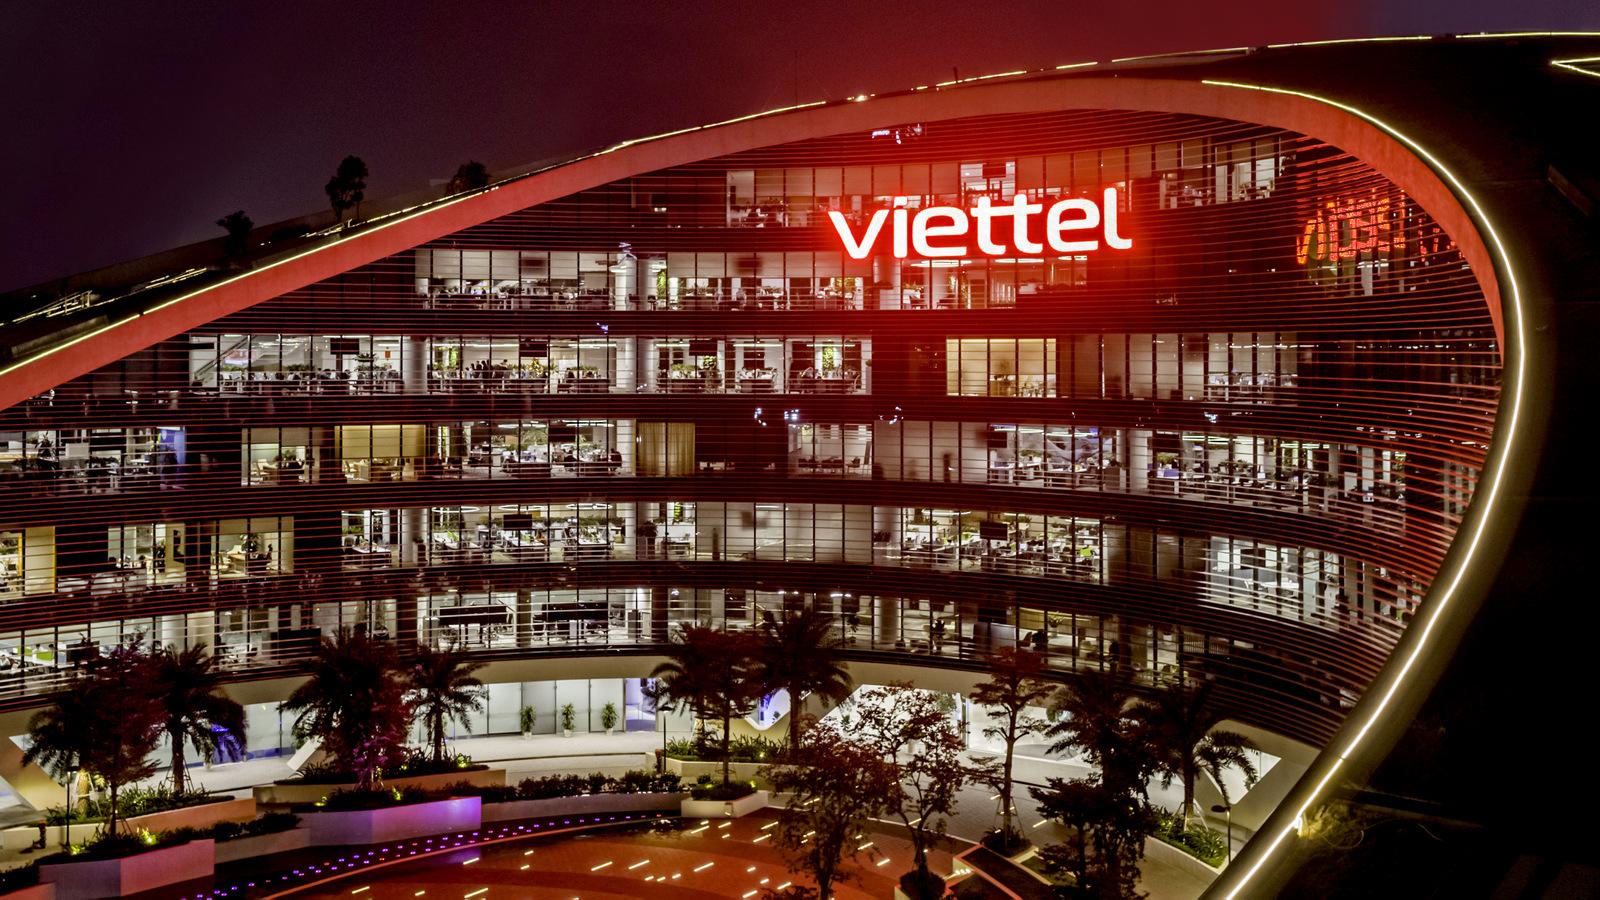 Tập đoàn Viettel: Nhà cung cấp dịch vụ viễn thông di động số 1 Việt Nam - ảnh 2